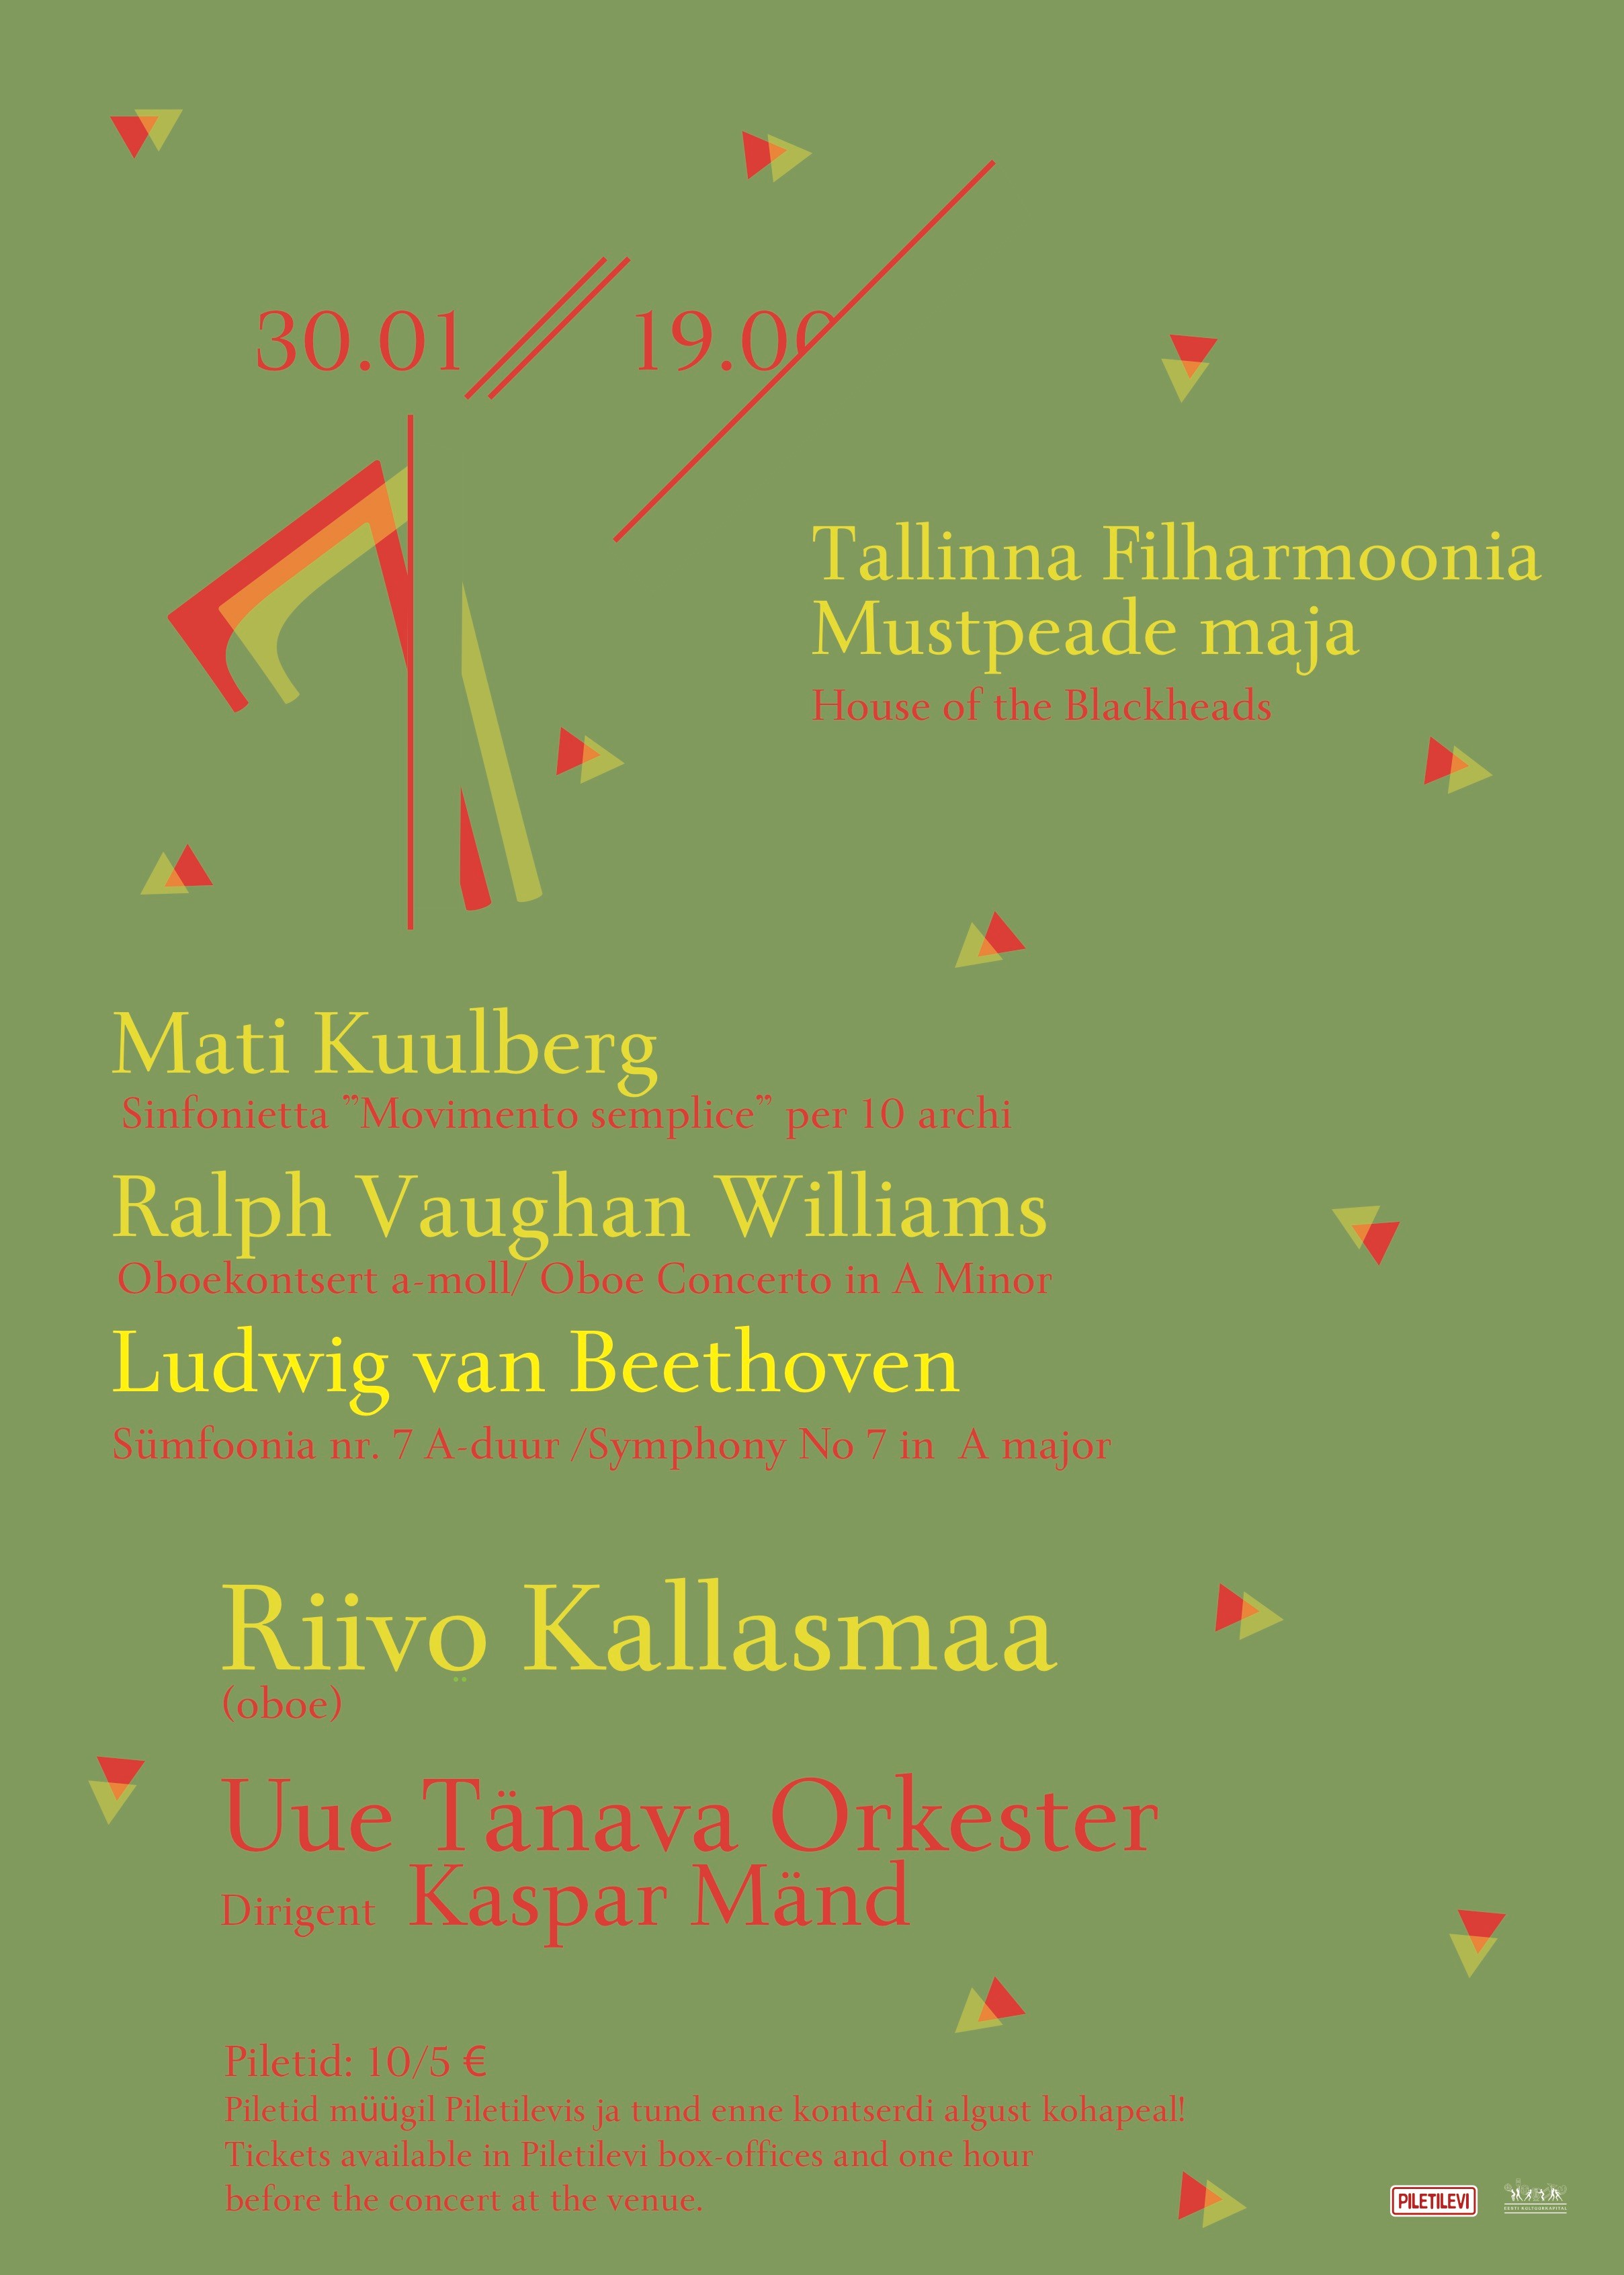 Riivo Kallasmaa (oboe), Uue Tänava Orkester, dirigent Kaspar Mänd 